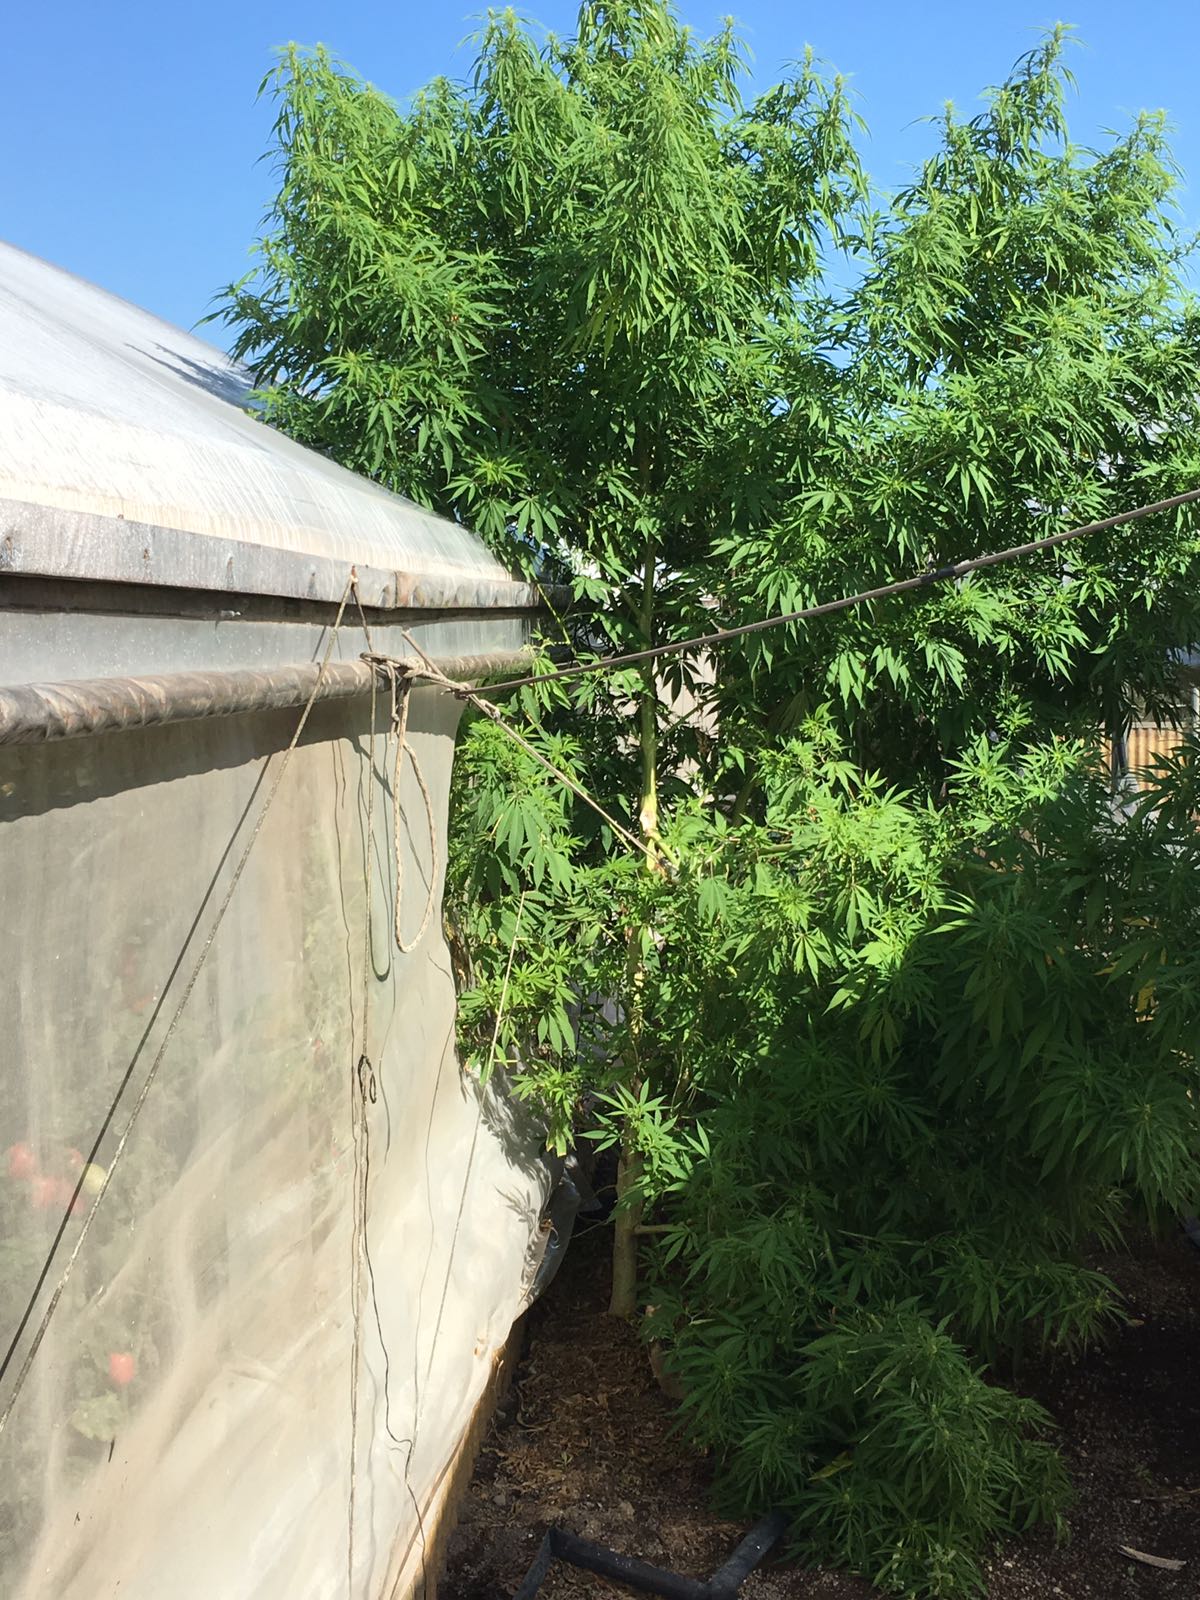  Alberi di marijuana nell’orto di casa: maxisequestro a San Marzano sul Sarno